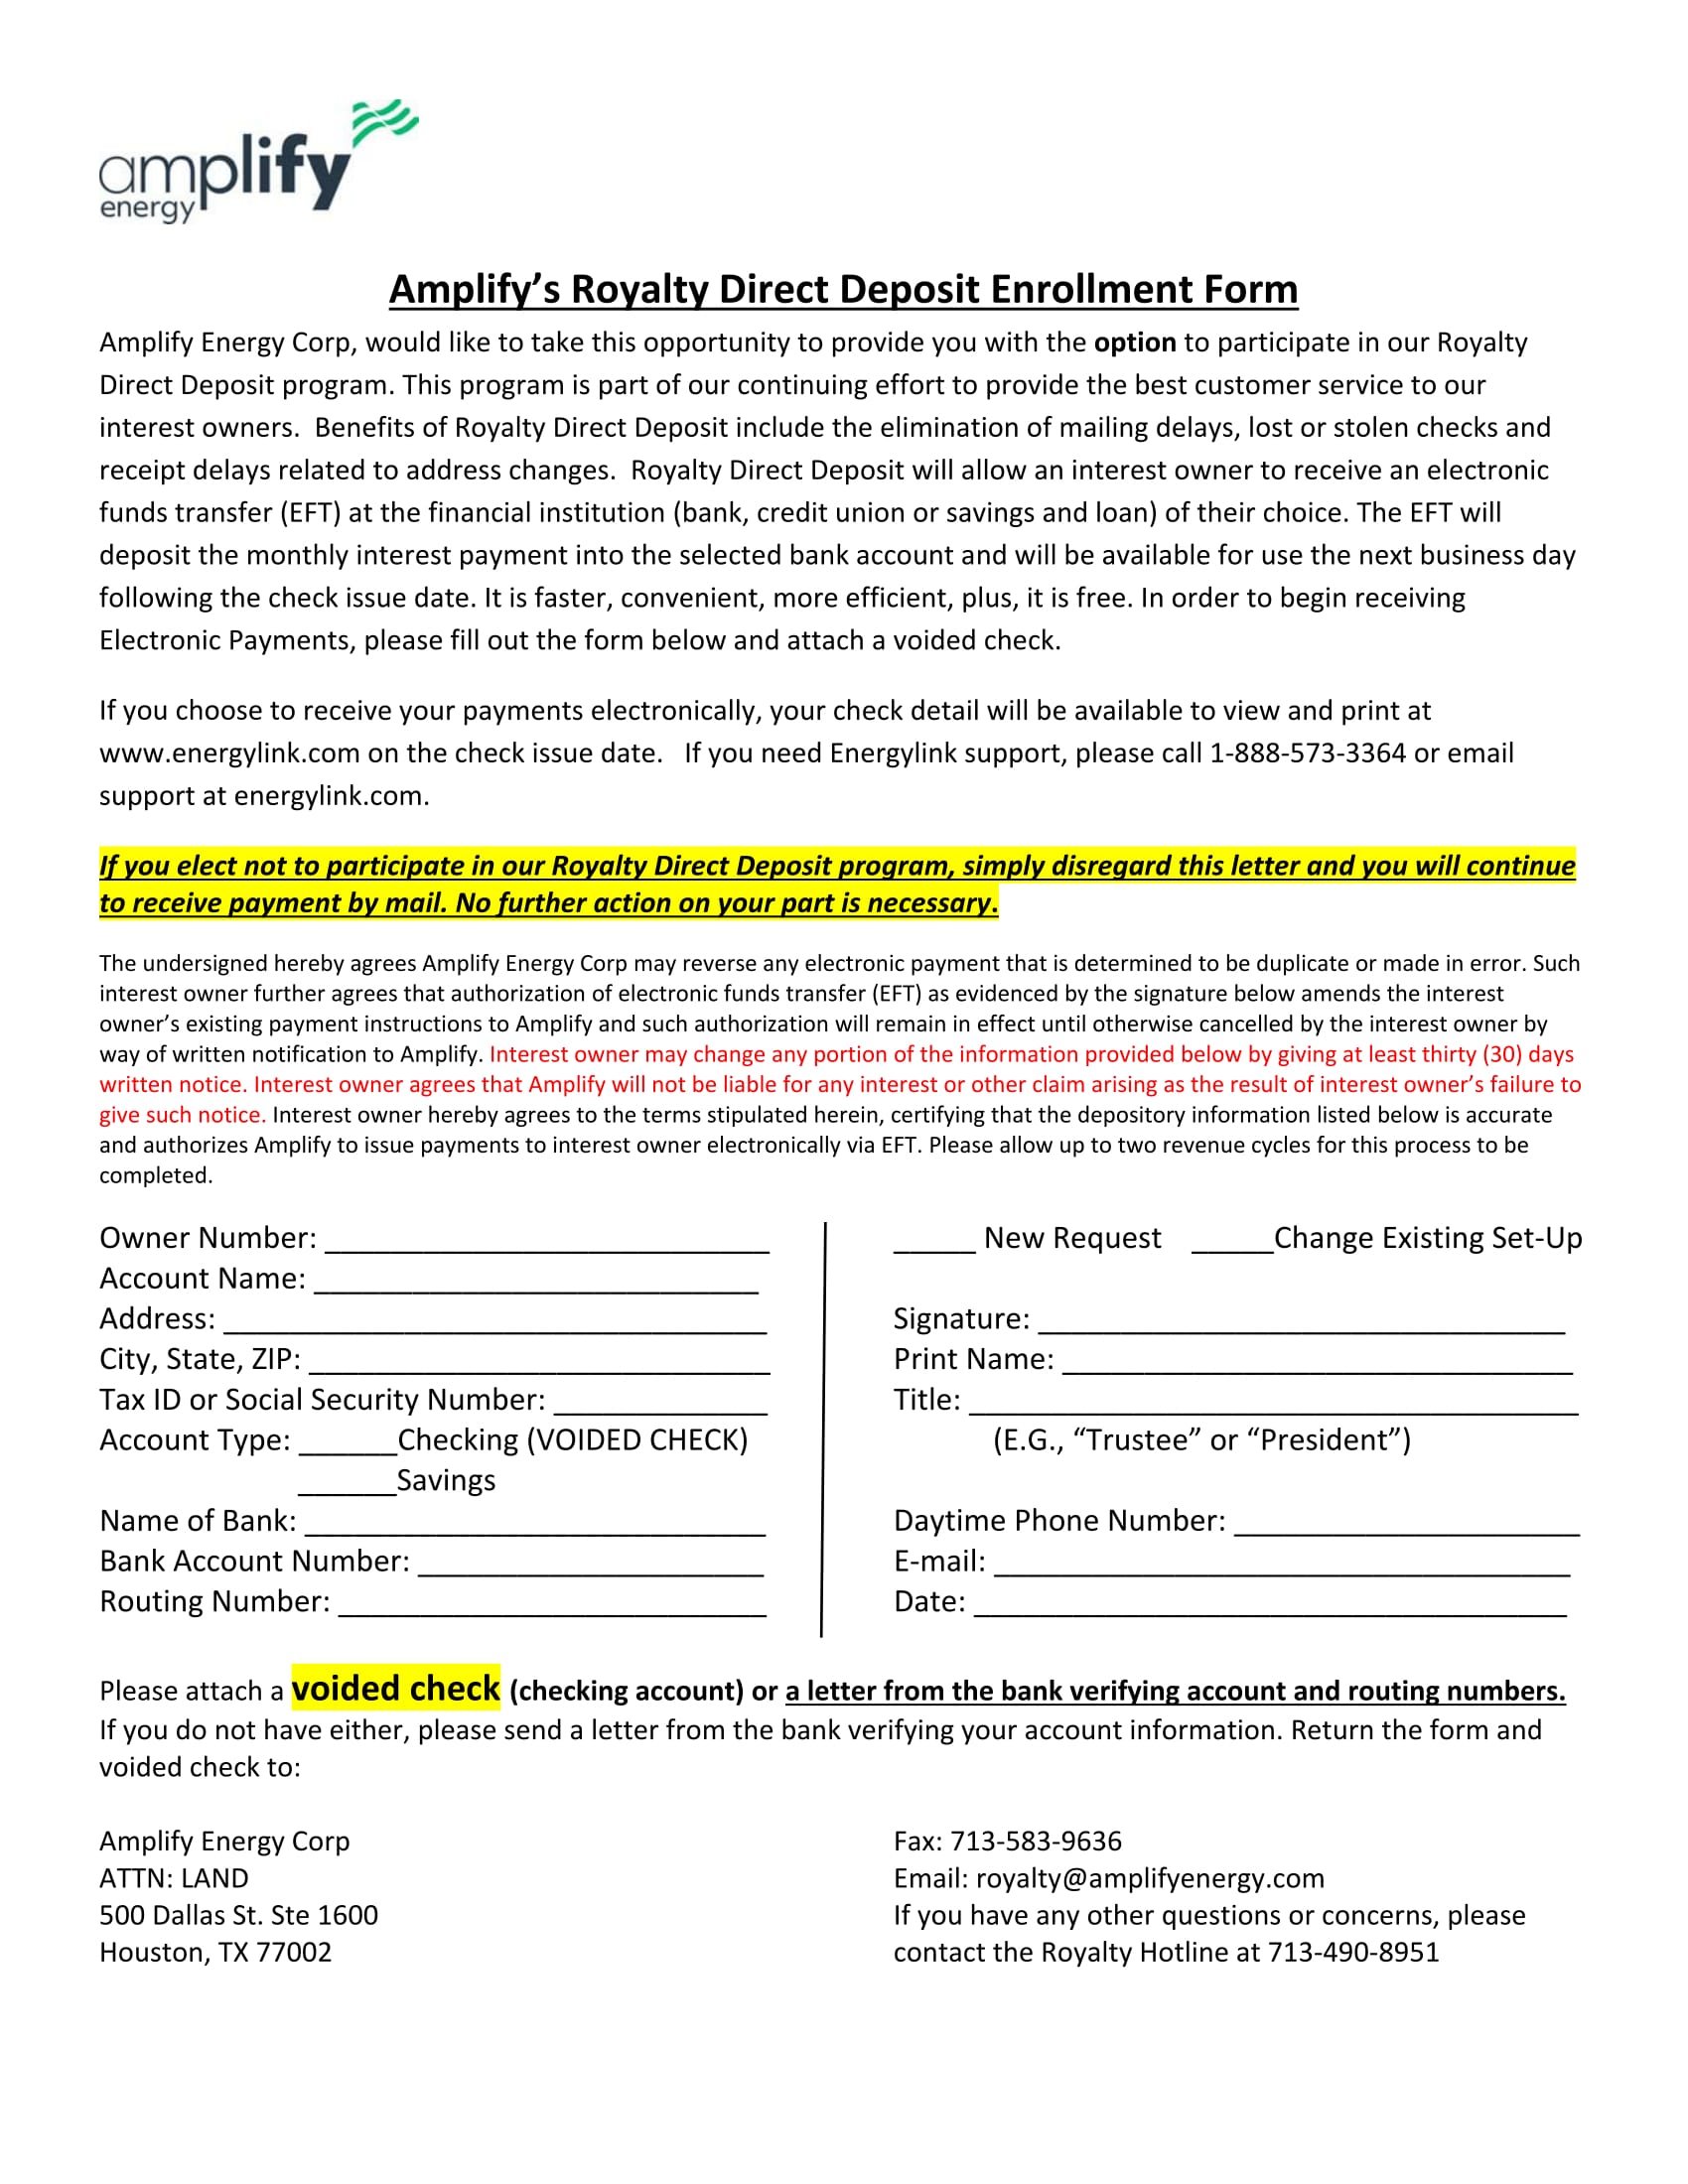 royalty direct deposit enrollment form 1